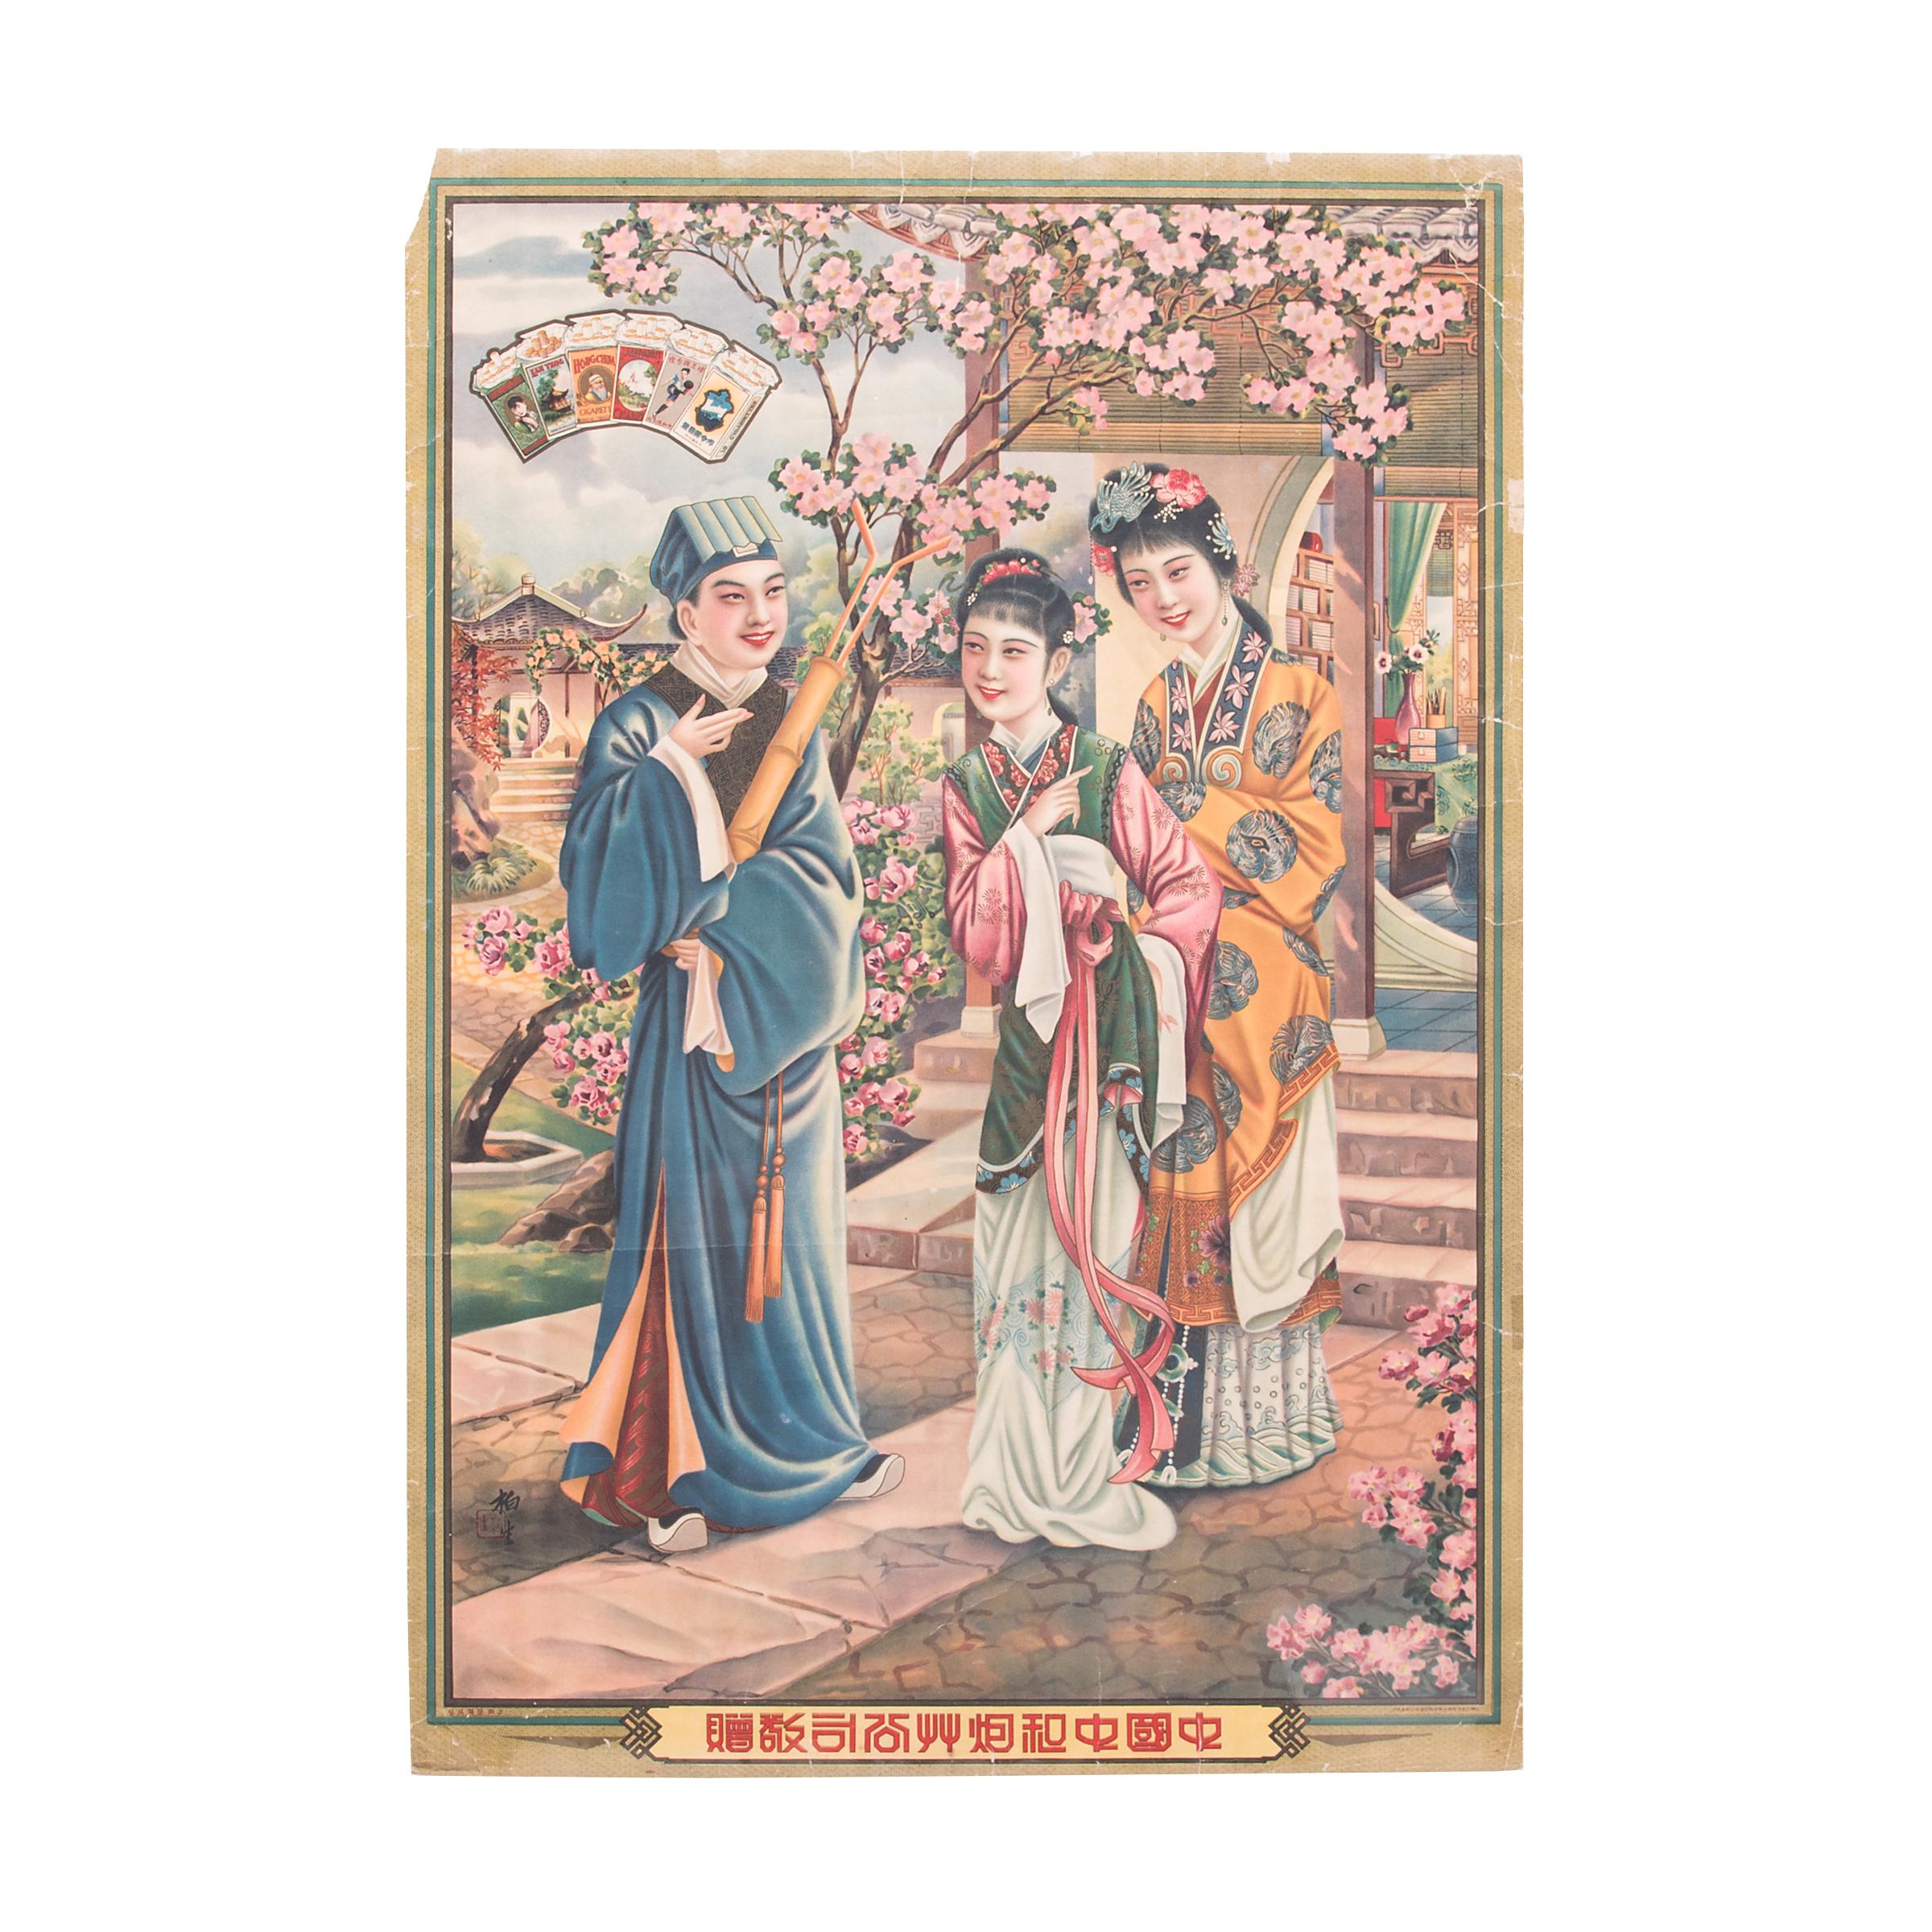 Affiche publicitaire de cigarettes chinoise vintage, vers 1930